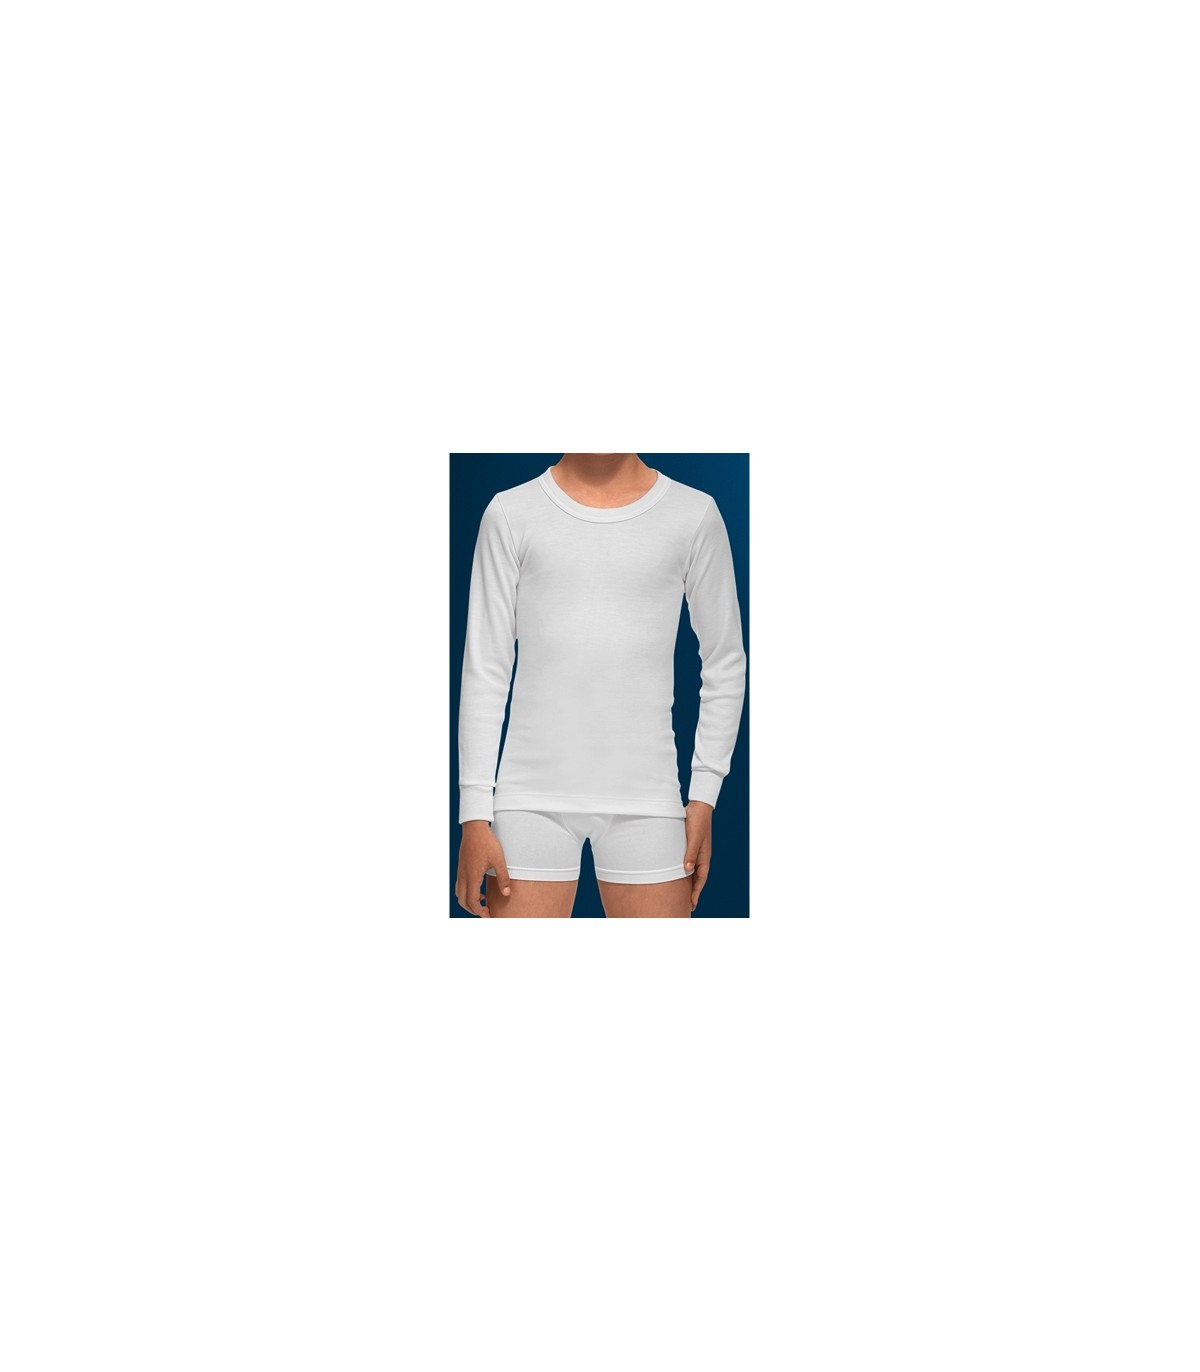 ABANDERADO 202 ✓ Camiseta térmica de niño con canalé manga corta